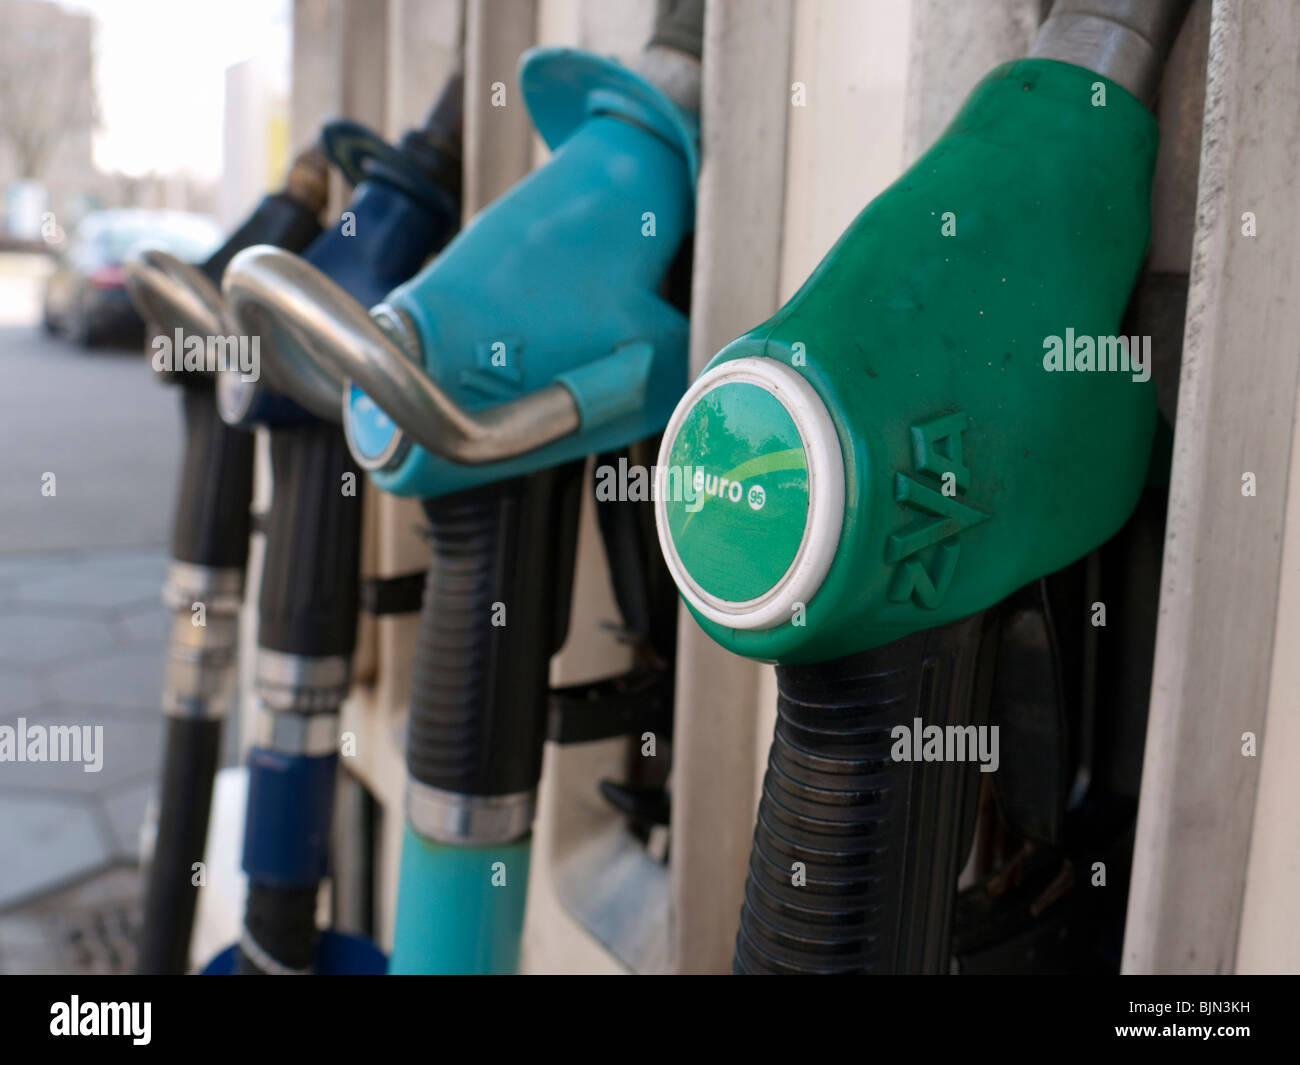 Détail de pompes à essence à la station de remplissage BP aux Pays-Bas Banque D'Images